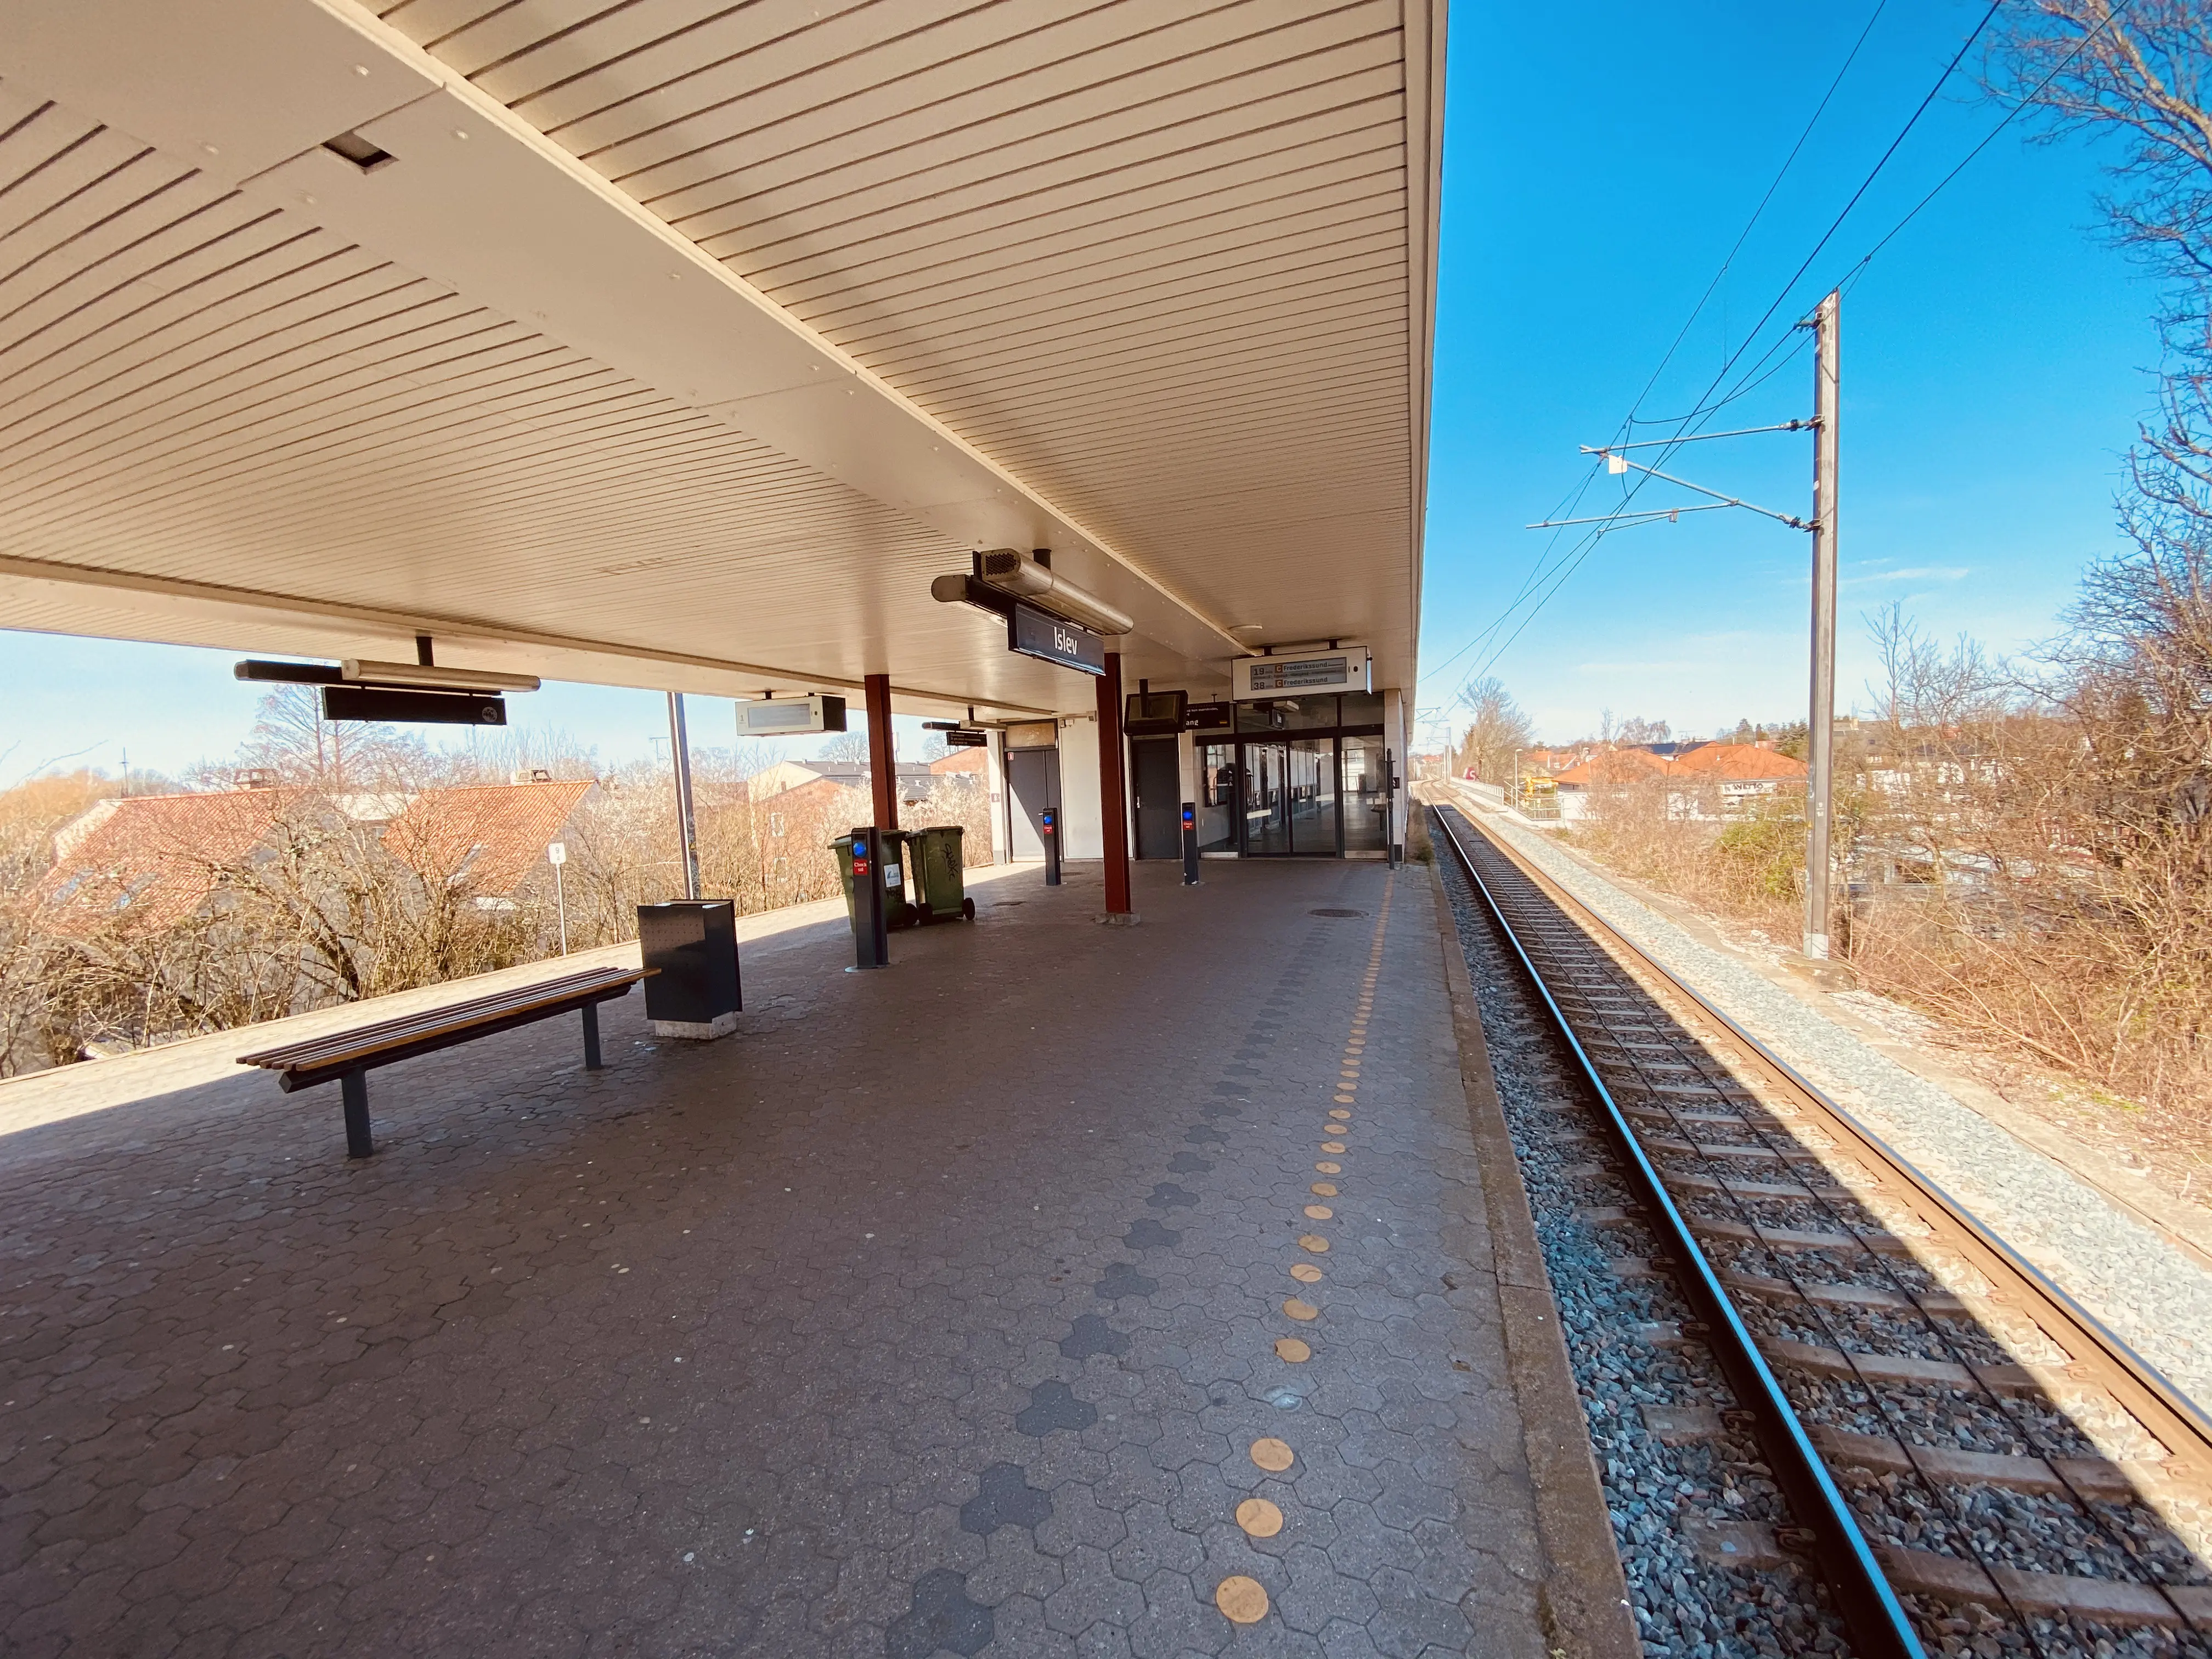 Billede af Islev S-togsstation.